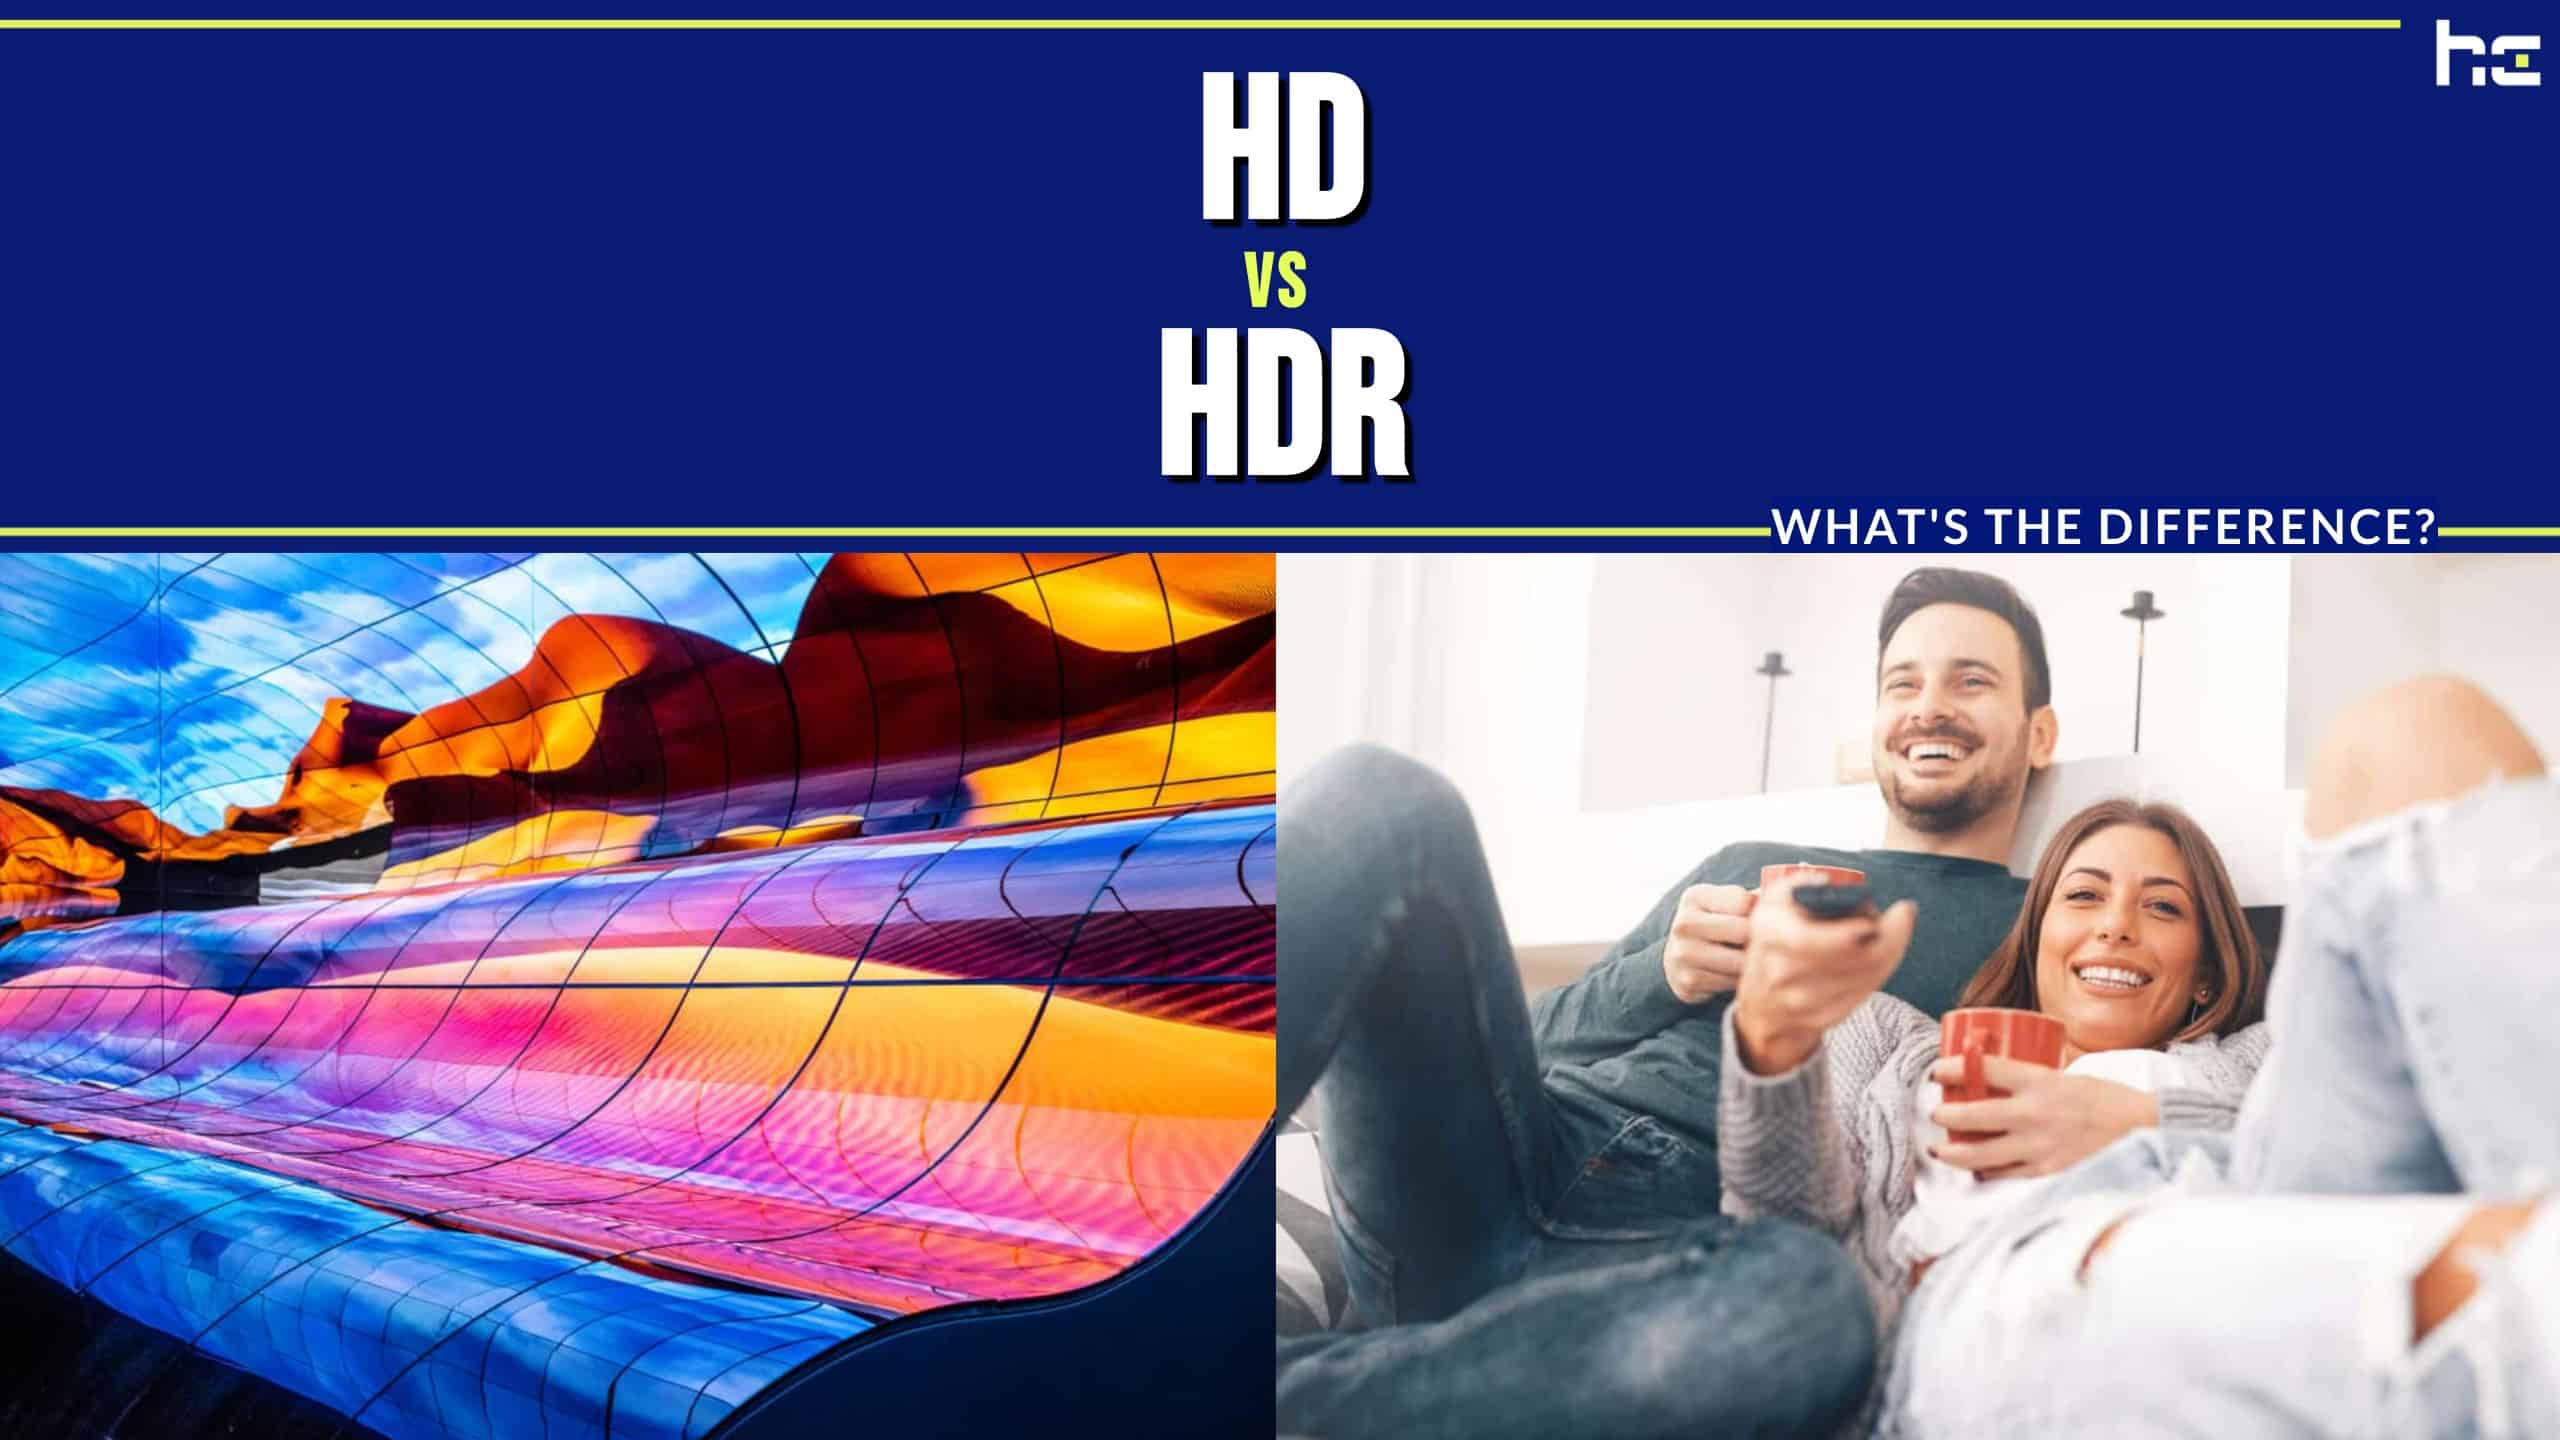 HD vs HDR